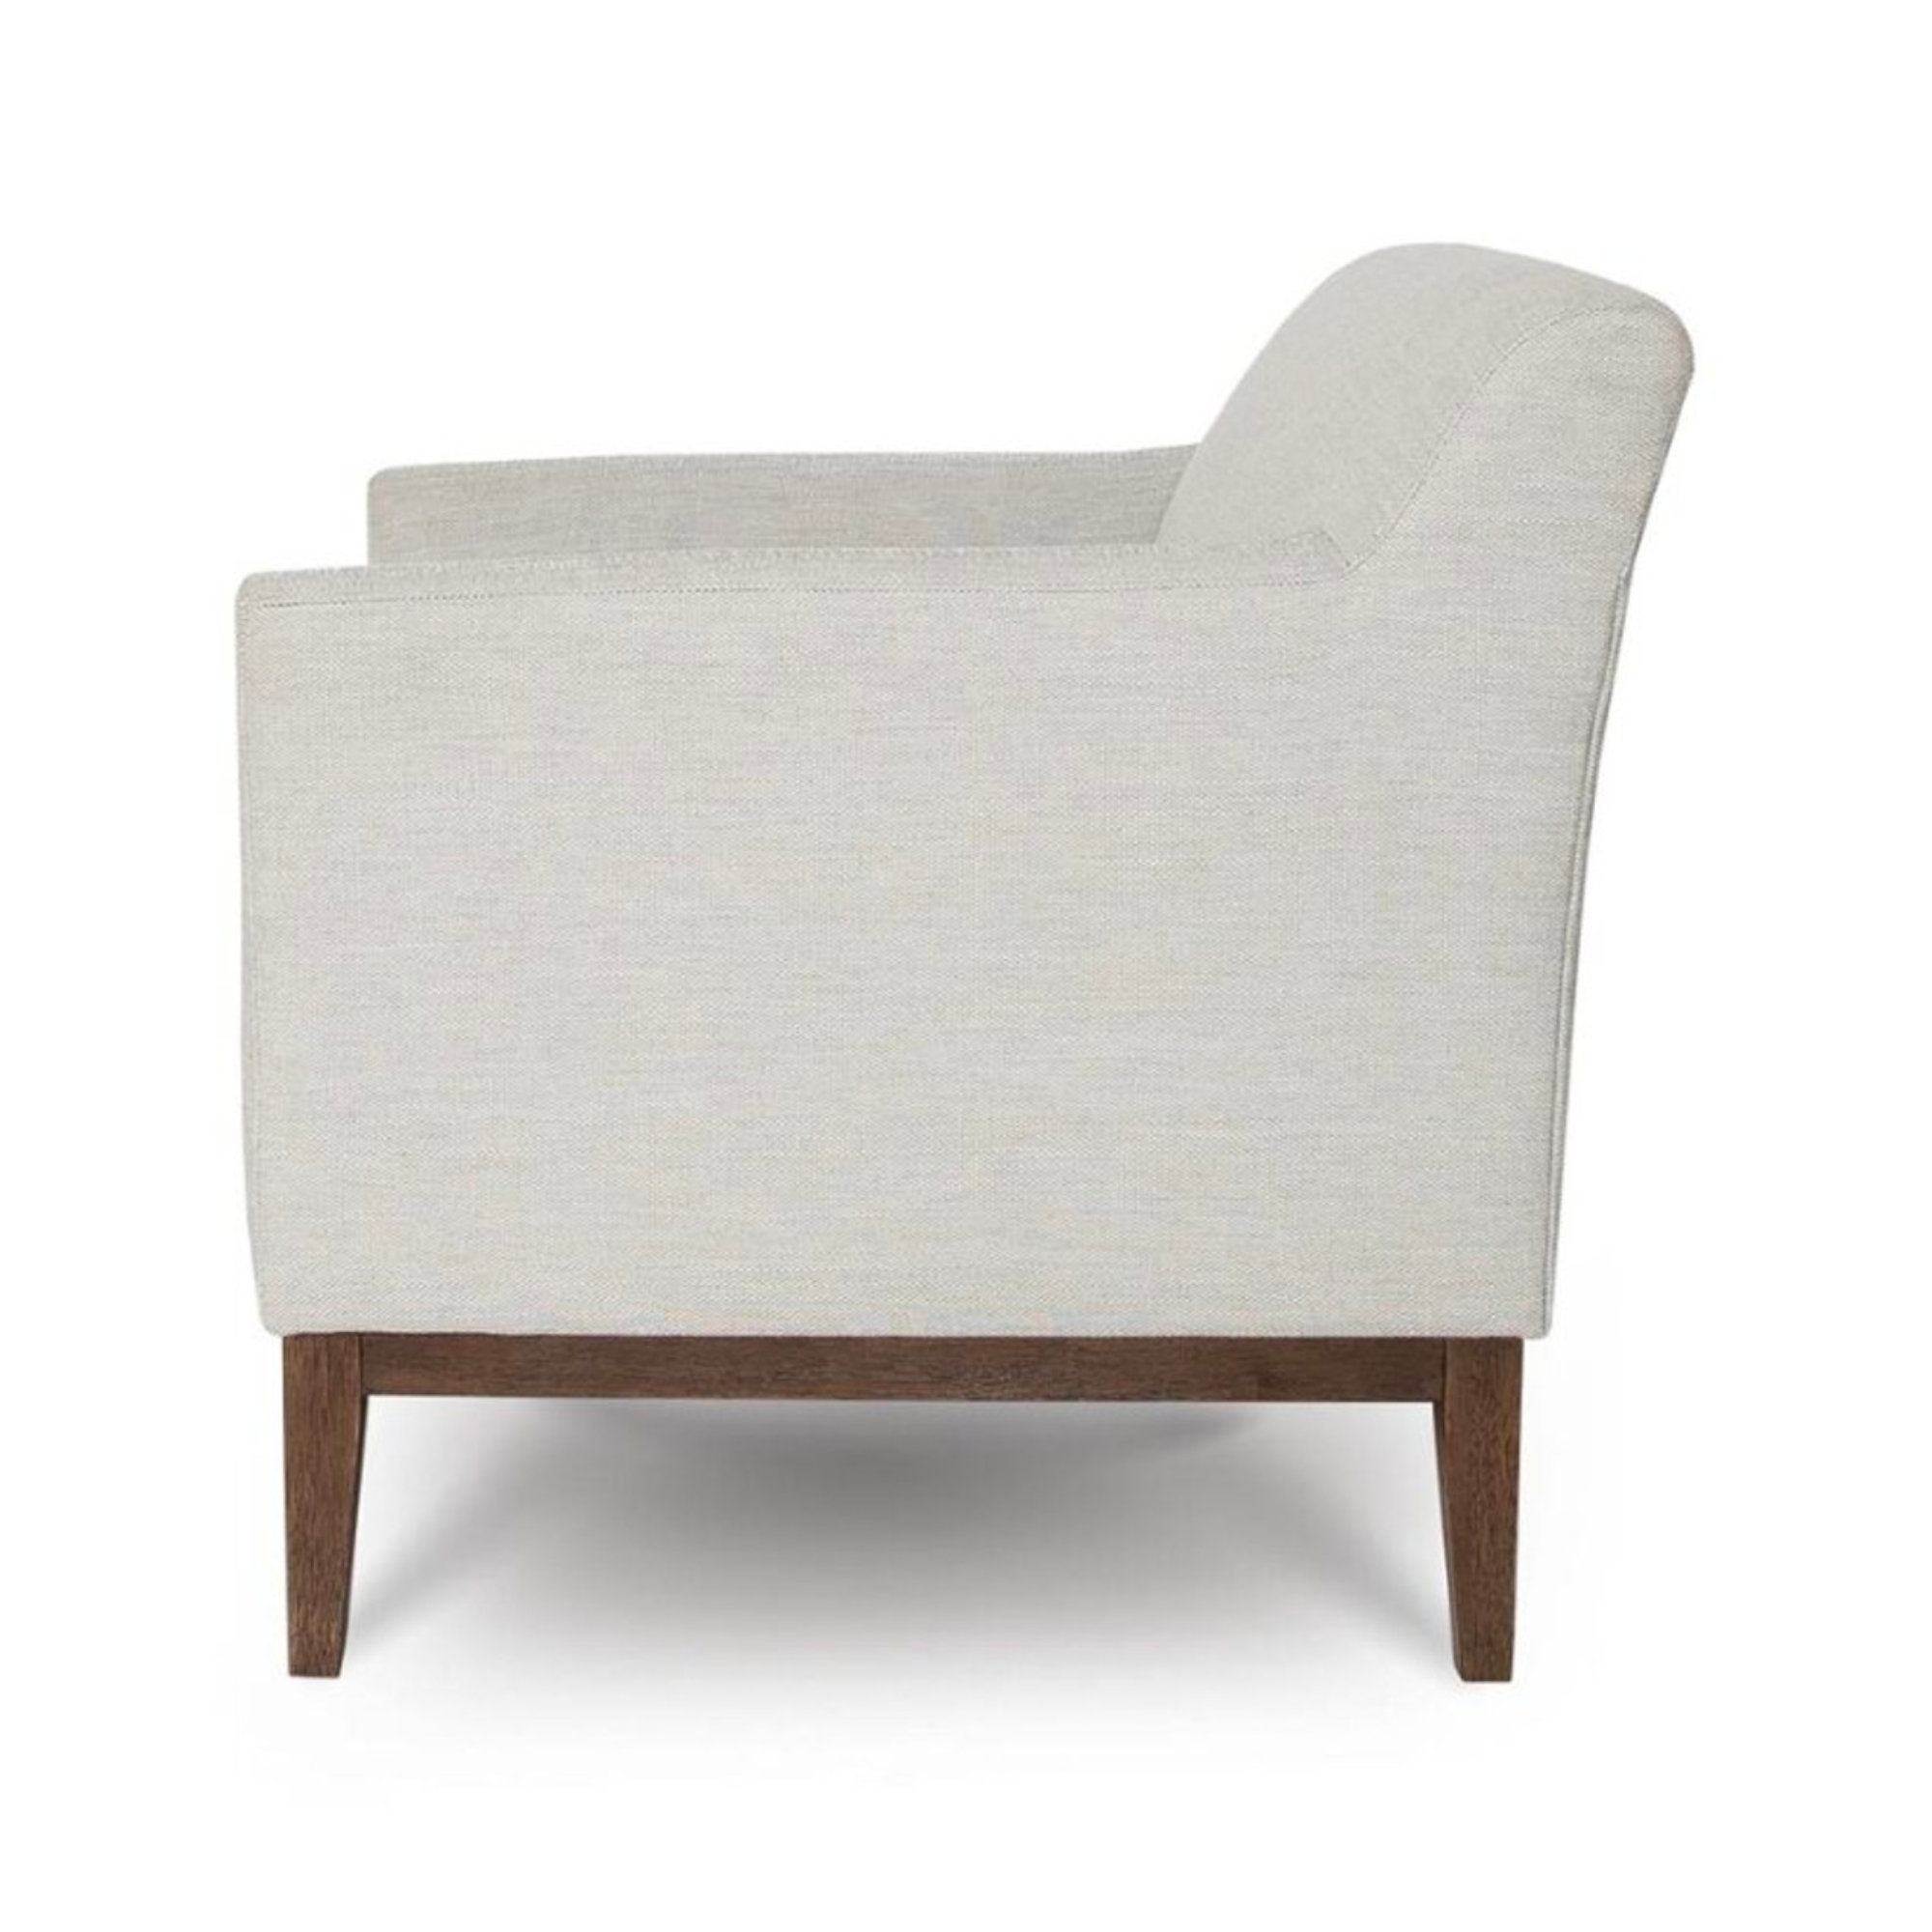 Ezria Chair - Sand